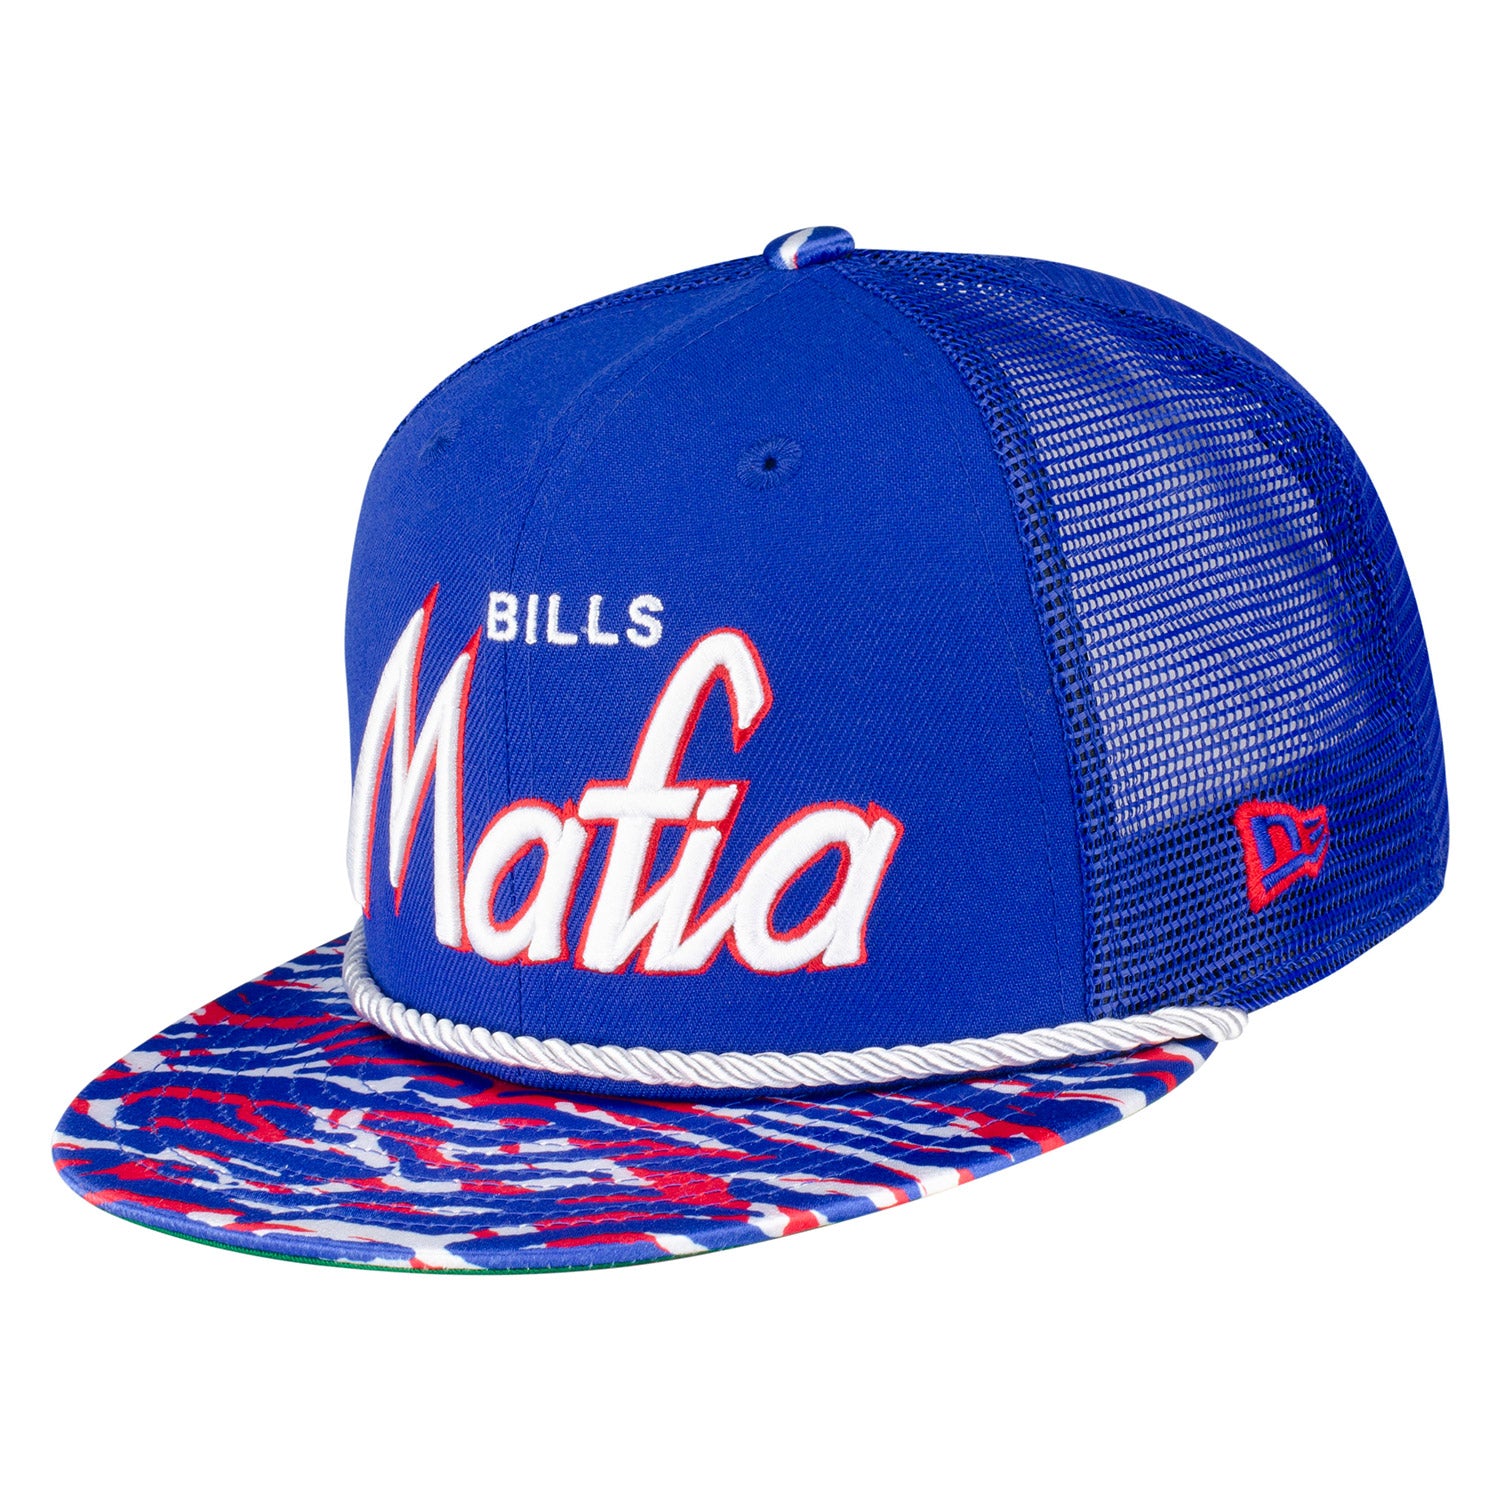 Mafia The Bills Trucker New Hat Snapback | Era Bills 9FIFTY Store